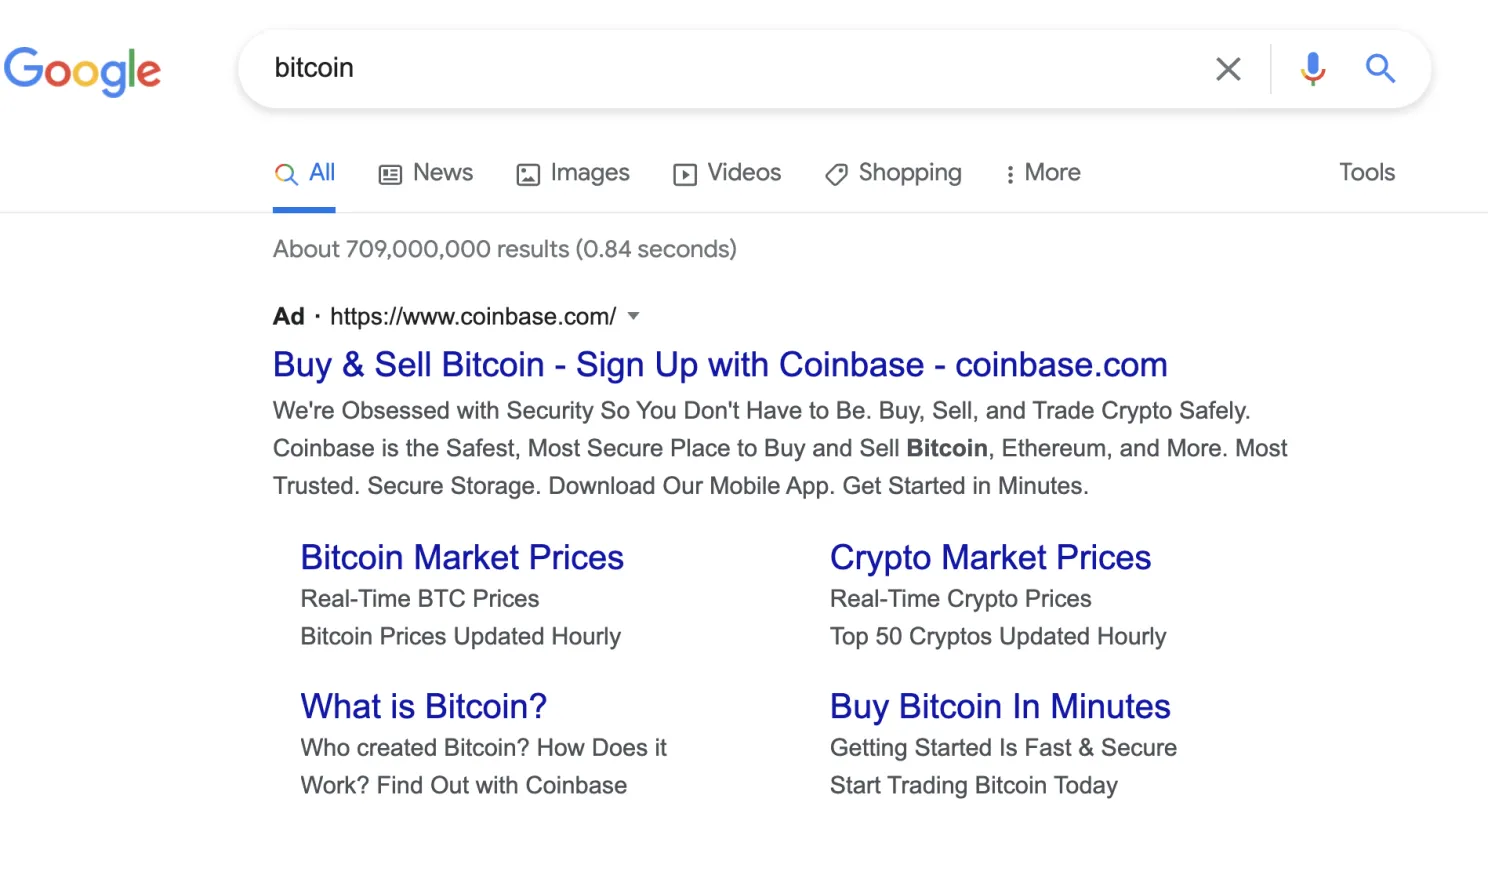 Vanaf vandaag accepteert Google weer advertenties van Bitcoin bedrijven